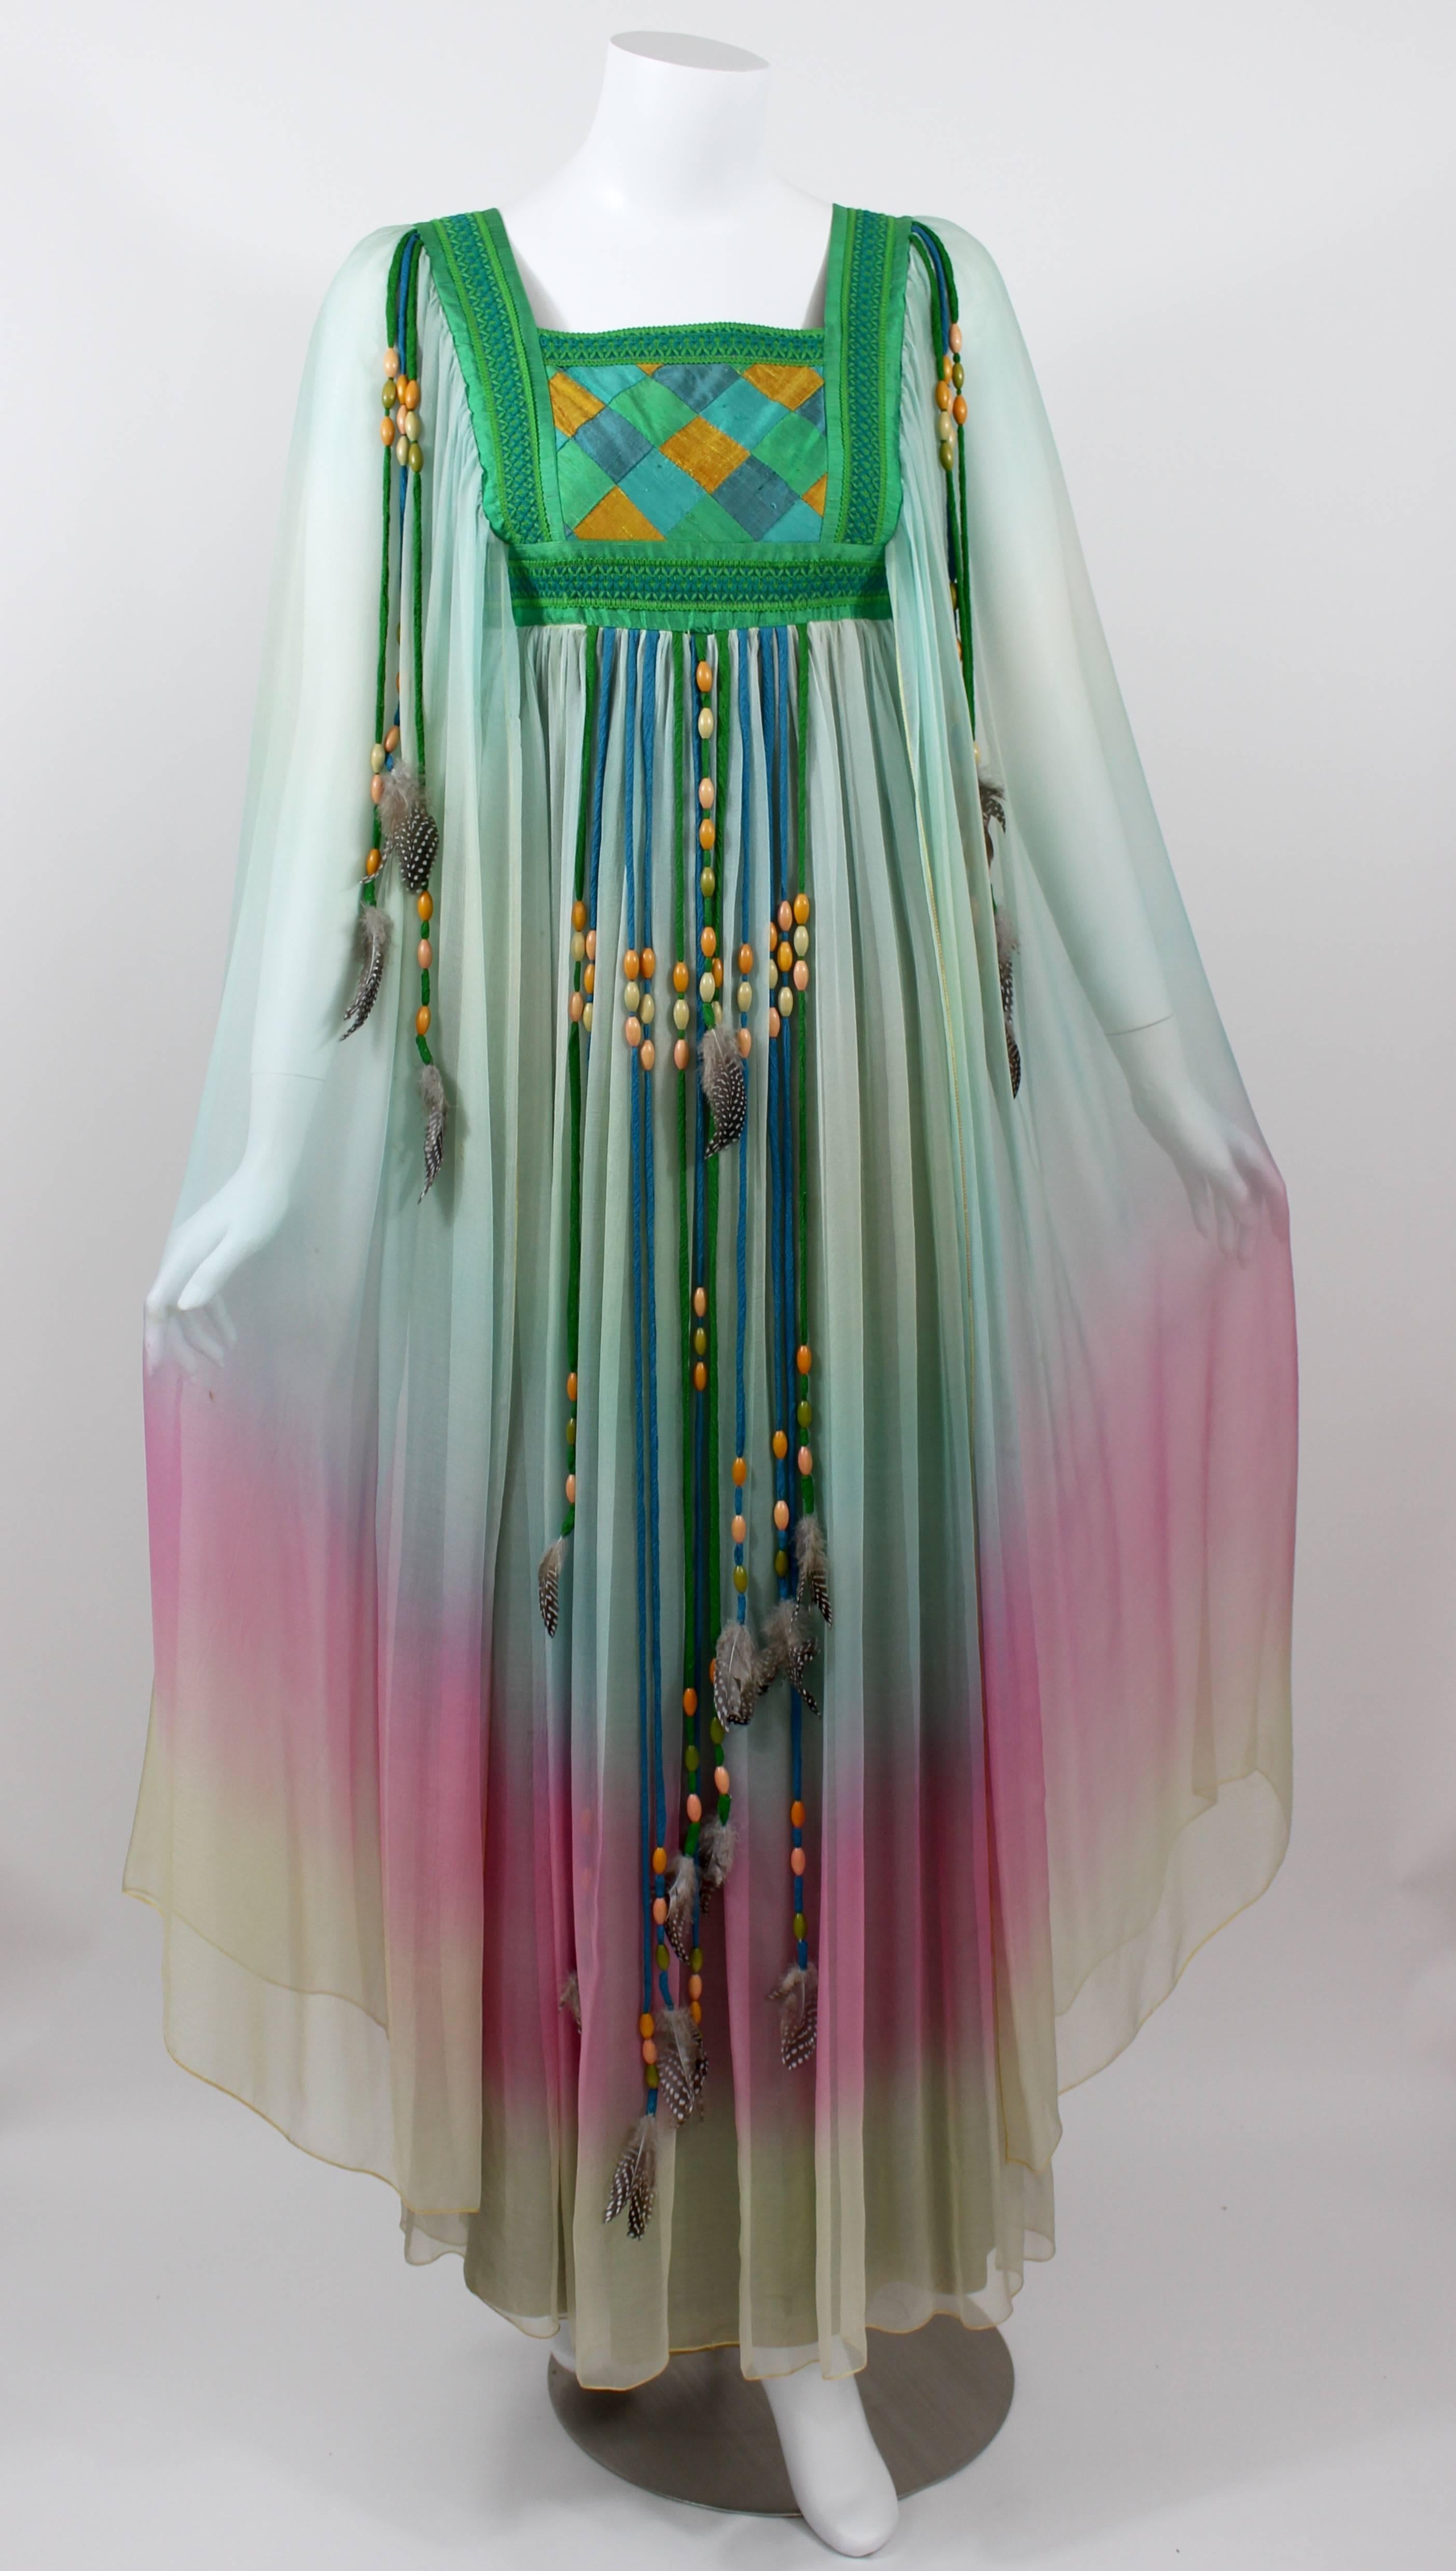 Gris Robe de mariée en mousseline de soie dégradée Gina Fratini Elizabeth Taylor documentée 1975